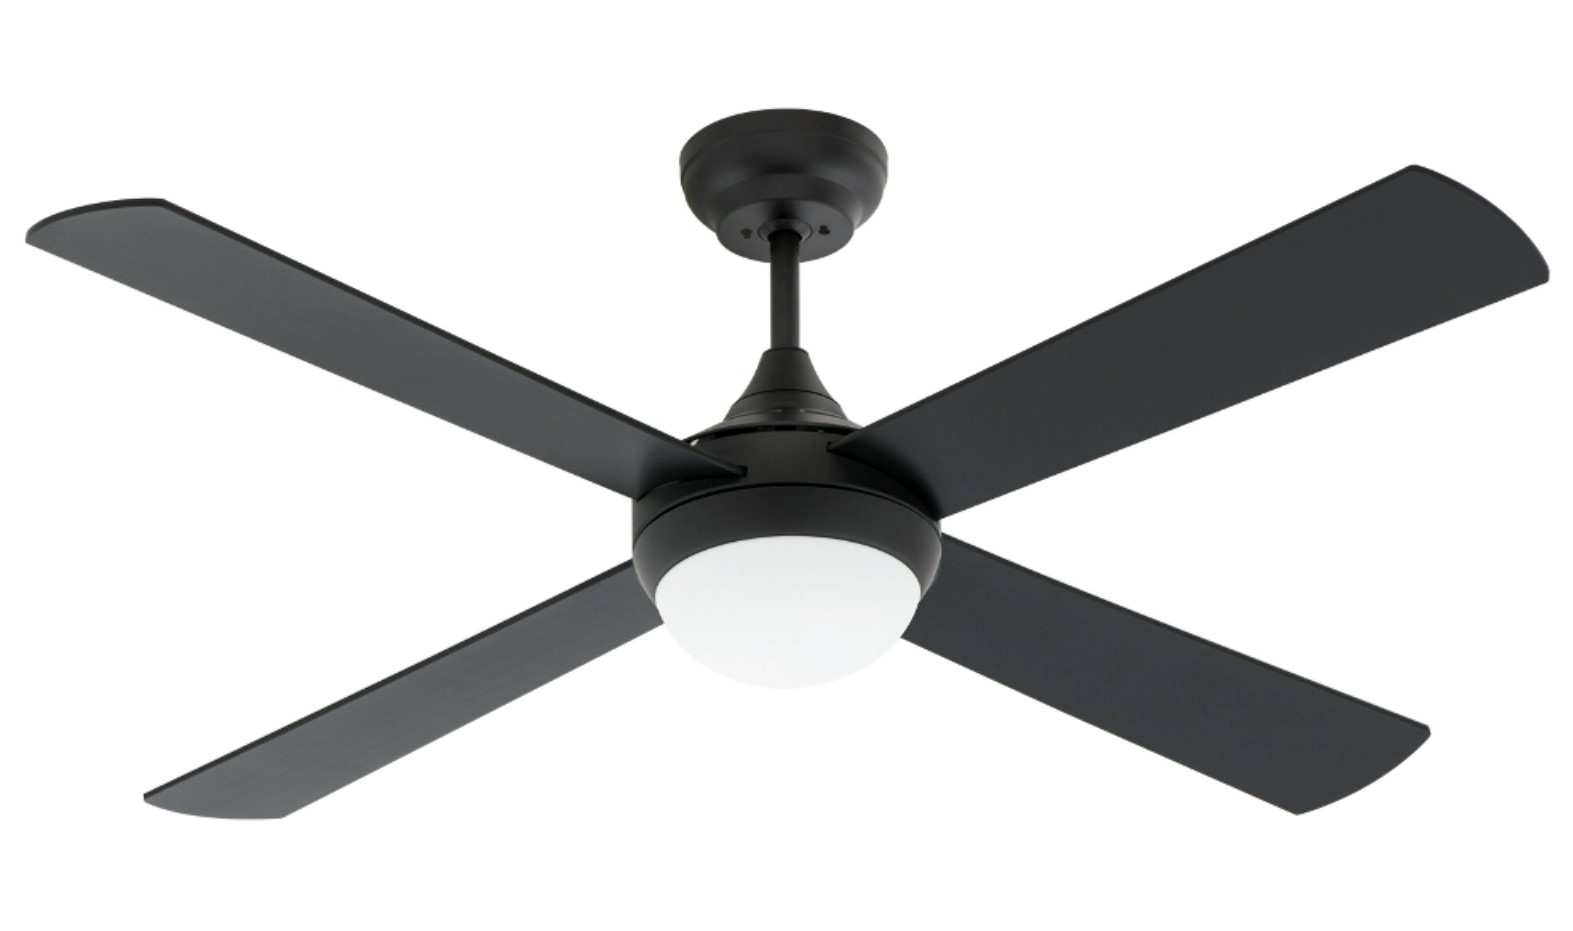 Arlec ceiling fan